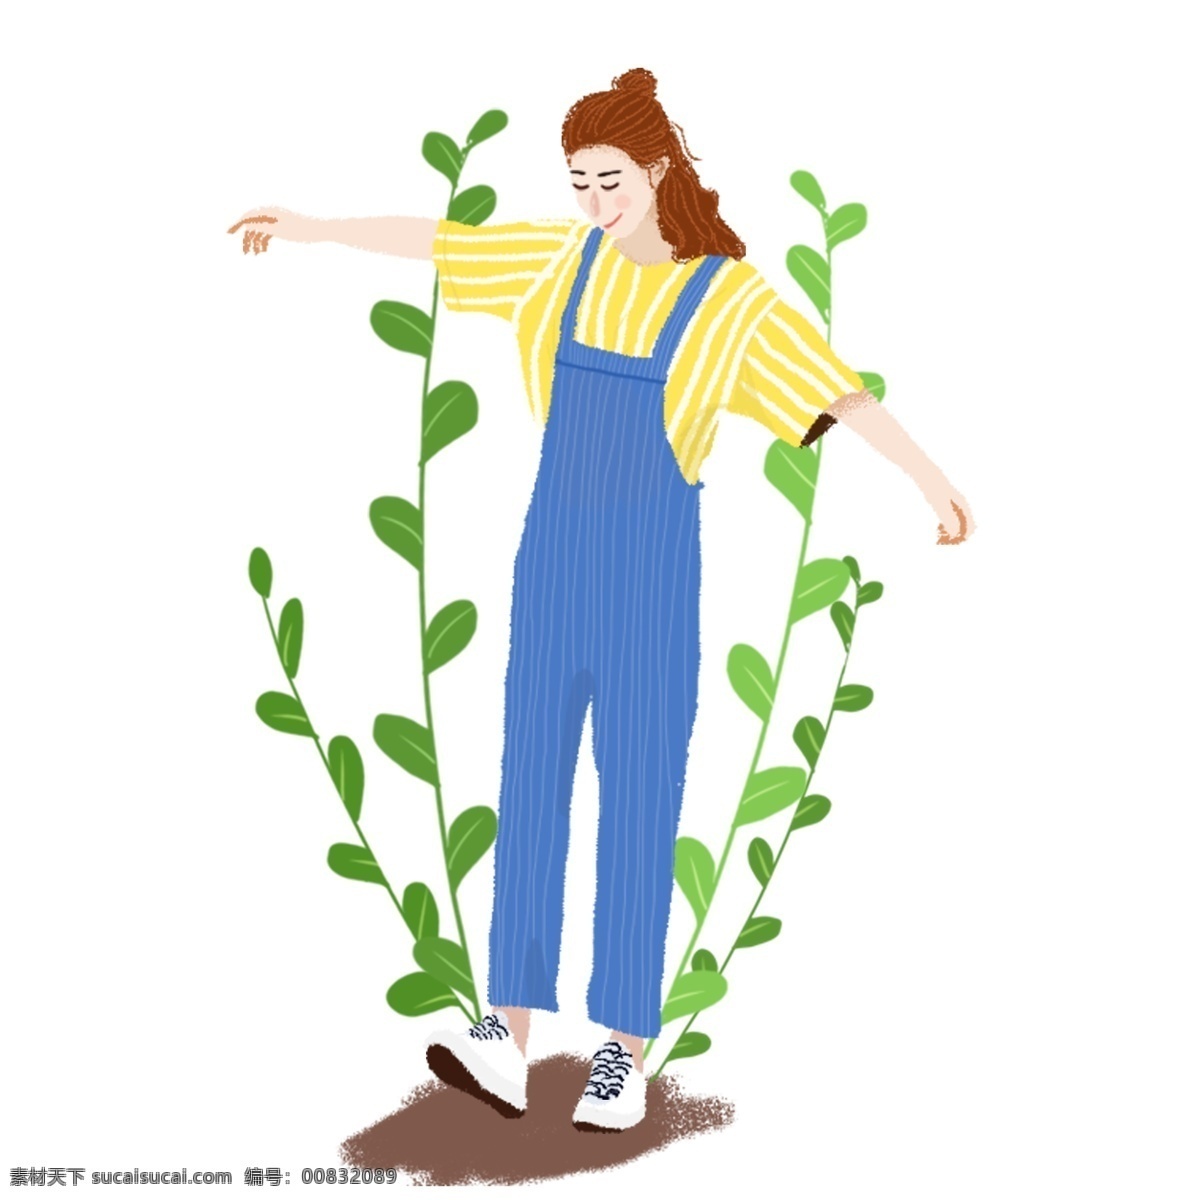 手绘 穿 蓝色 背带裤 半 扎 丸子 头 女生 人物 元素 手绘女孩 手绘人物 植物 绿叶 人物元素 短发女孩